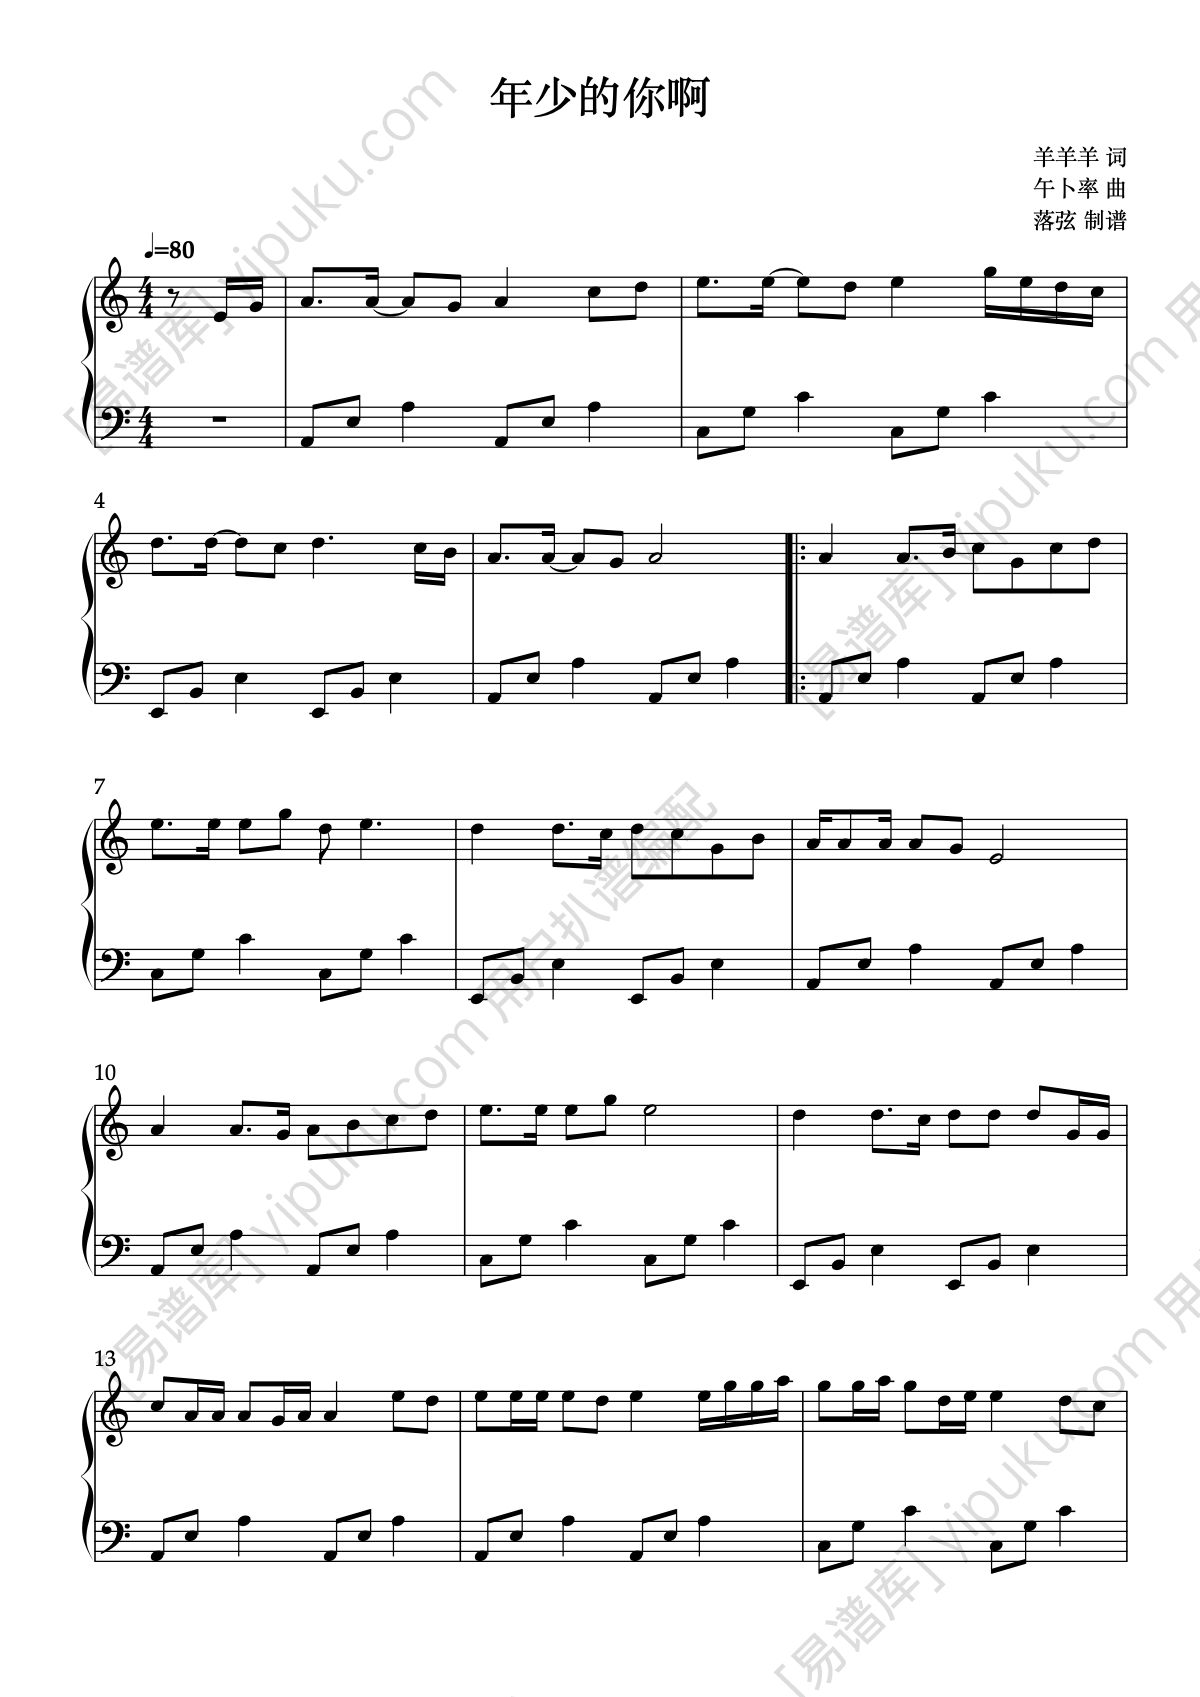 《年少的你啊》钢琴谱 - 浩然H.R简单版C调和弦弹唱伴奏无旋律 - 加歌词 - 钢琴简谱